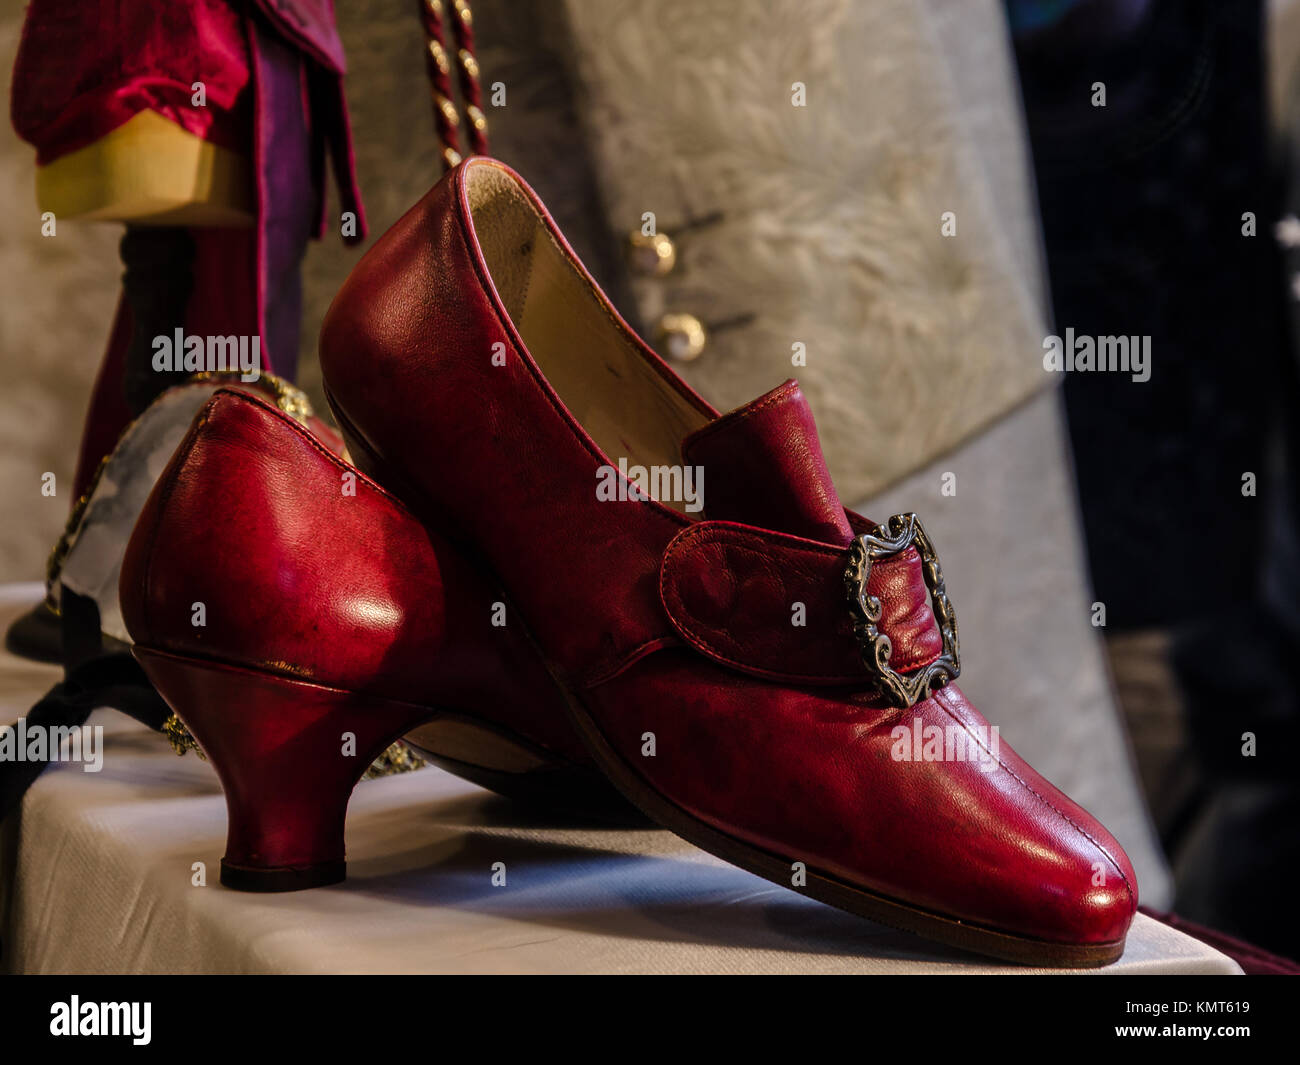 Detalles de zapatos rojos en estilo veneciano para el tradicional Carnaval  de Venecia, Italia Fotografía de stock - Alamy